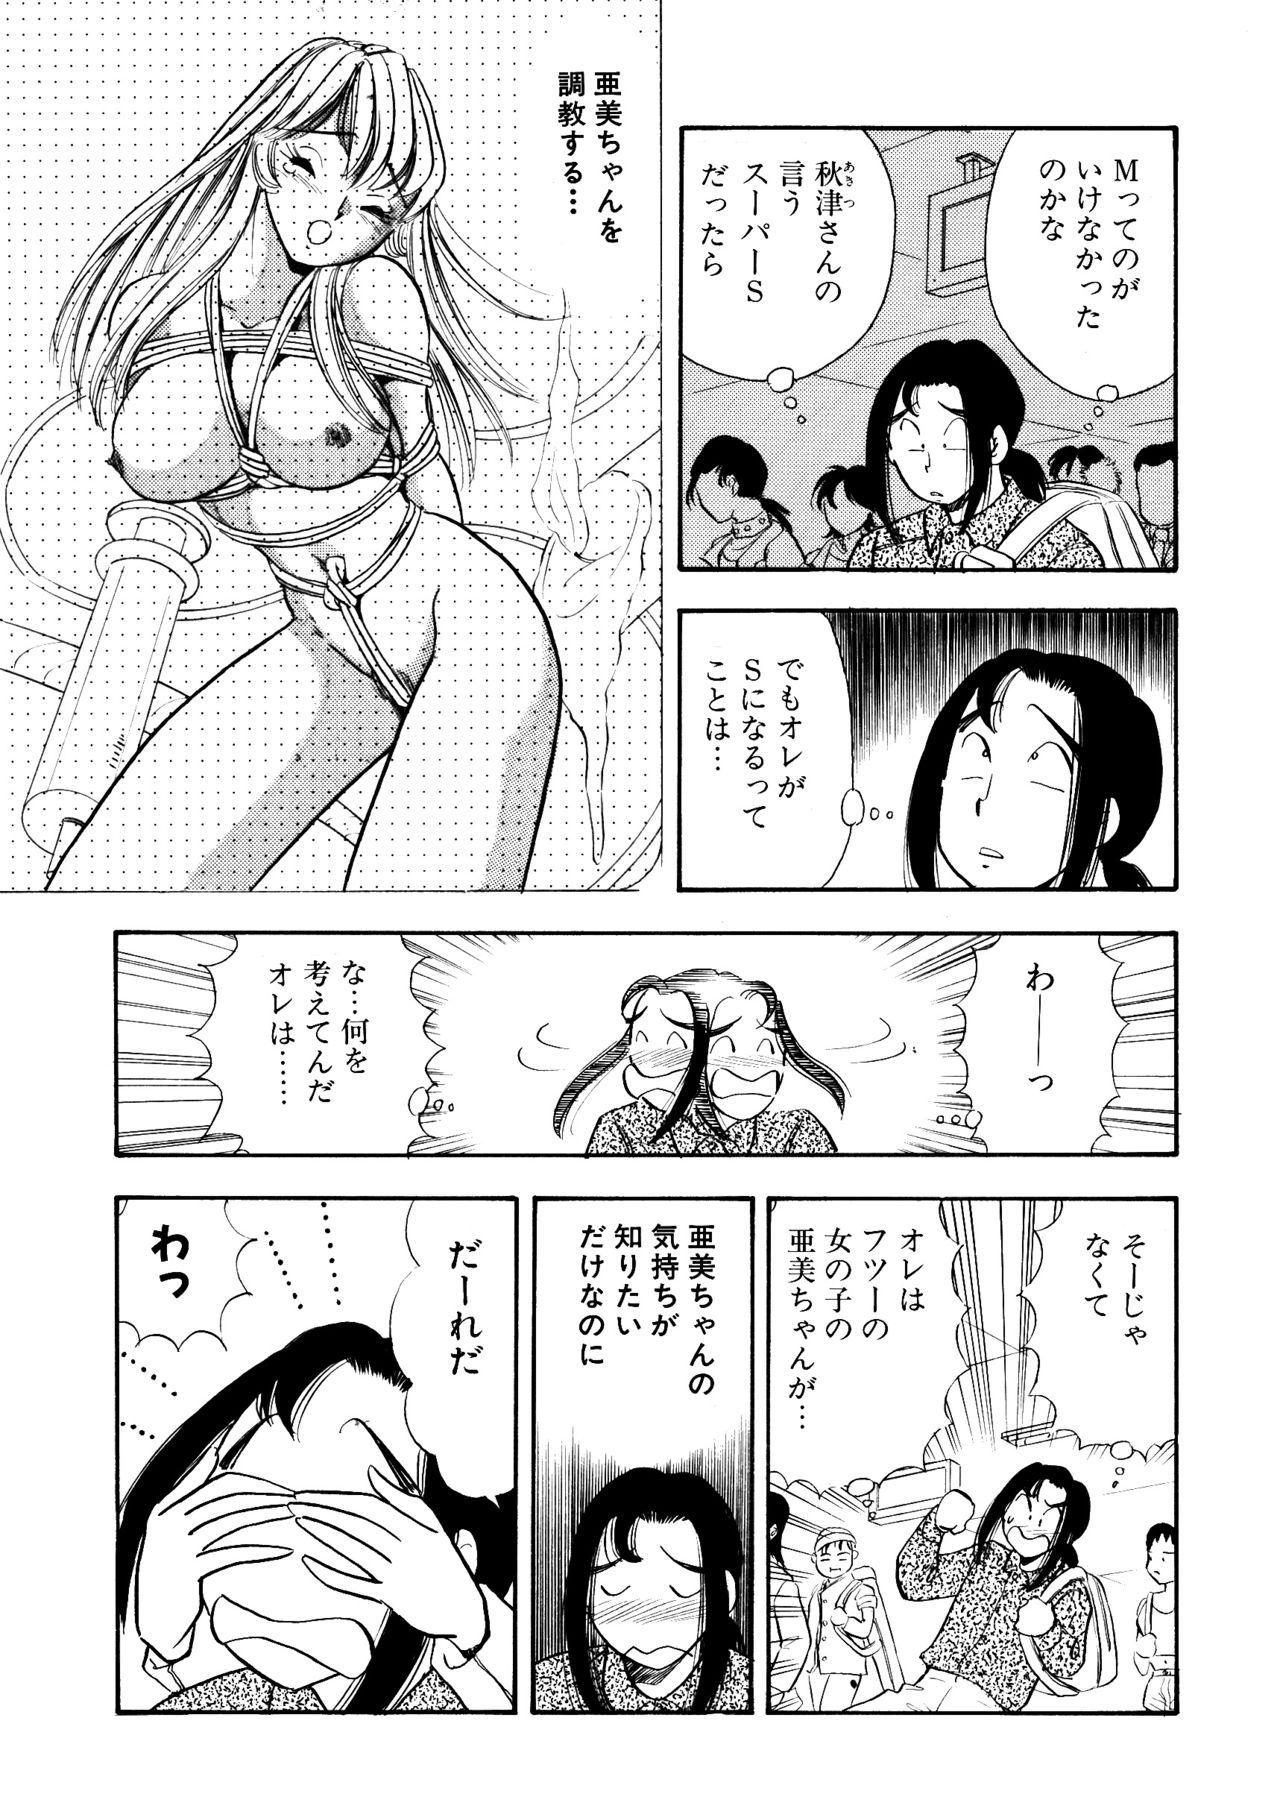 [Marumi Kikaku (Satomaru)] S&M Junkie 10 - Shame Play [丸美企画 (サトマル)] SMジャンキー・step10・羞恥プレイ